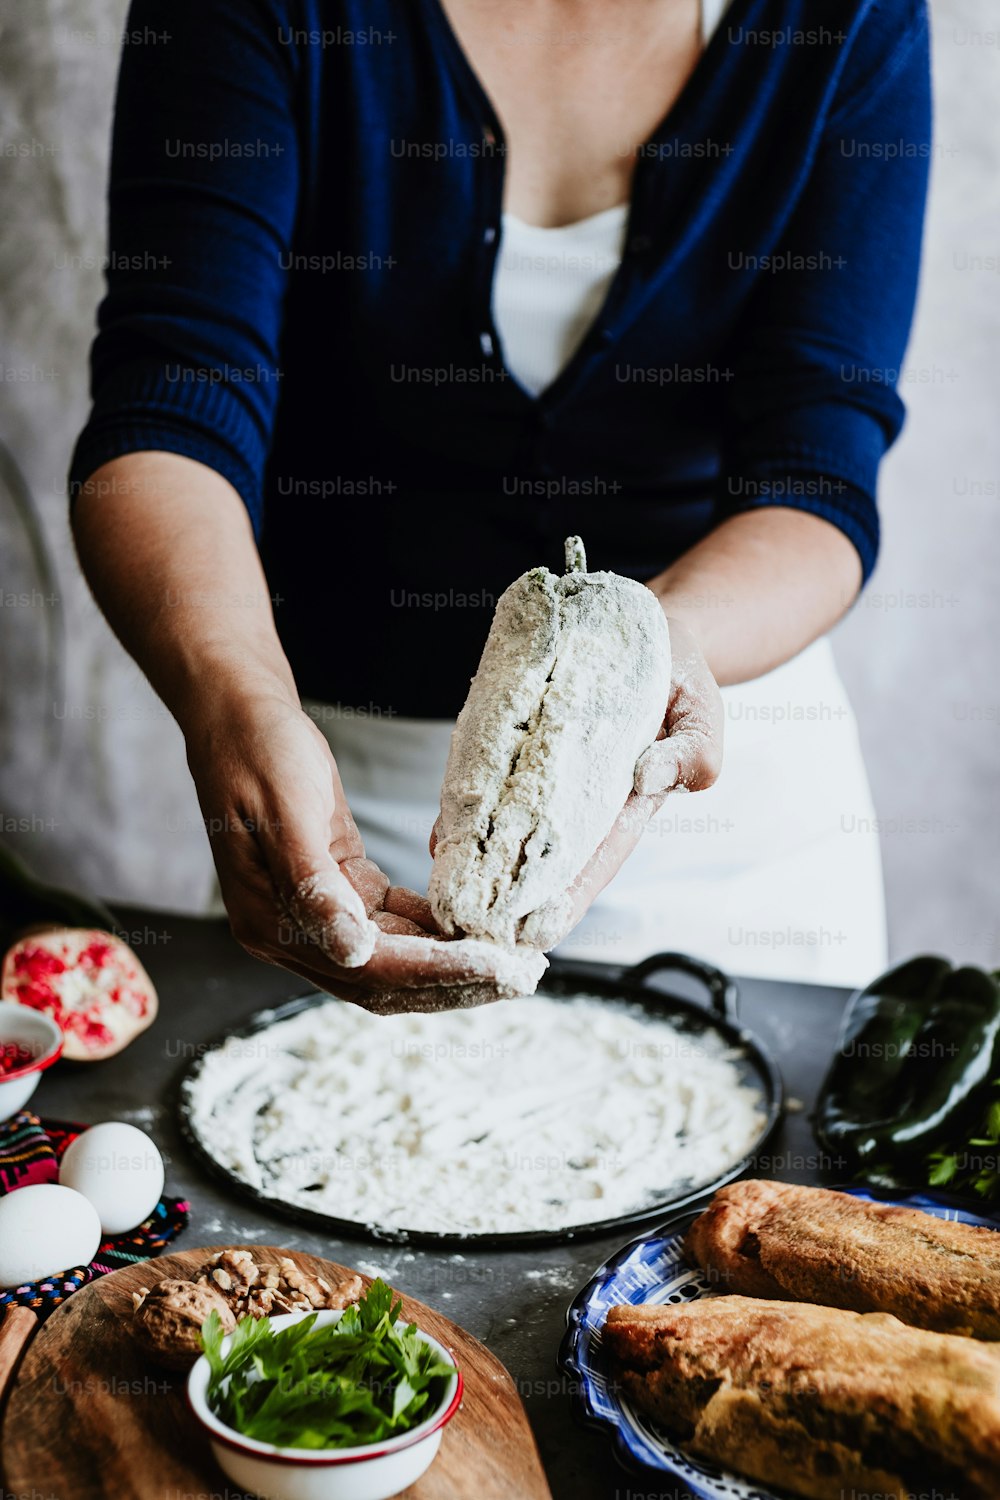 cucina messicana peperoncini in pastella en nogada ricetta da mani di donna con peperoncino Poblano e ingredienti, piatto tradizionale in Messico